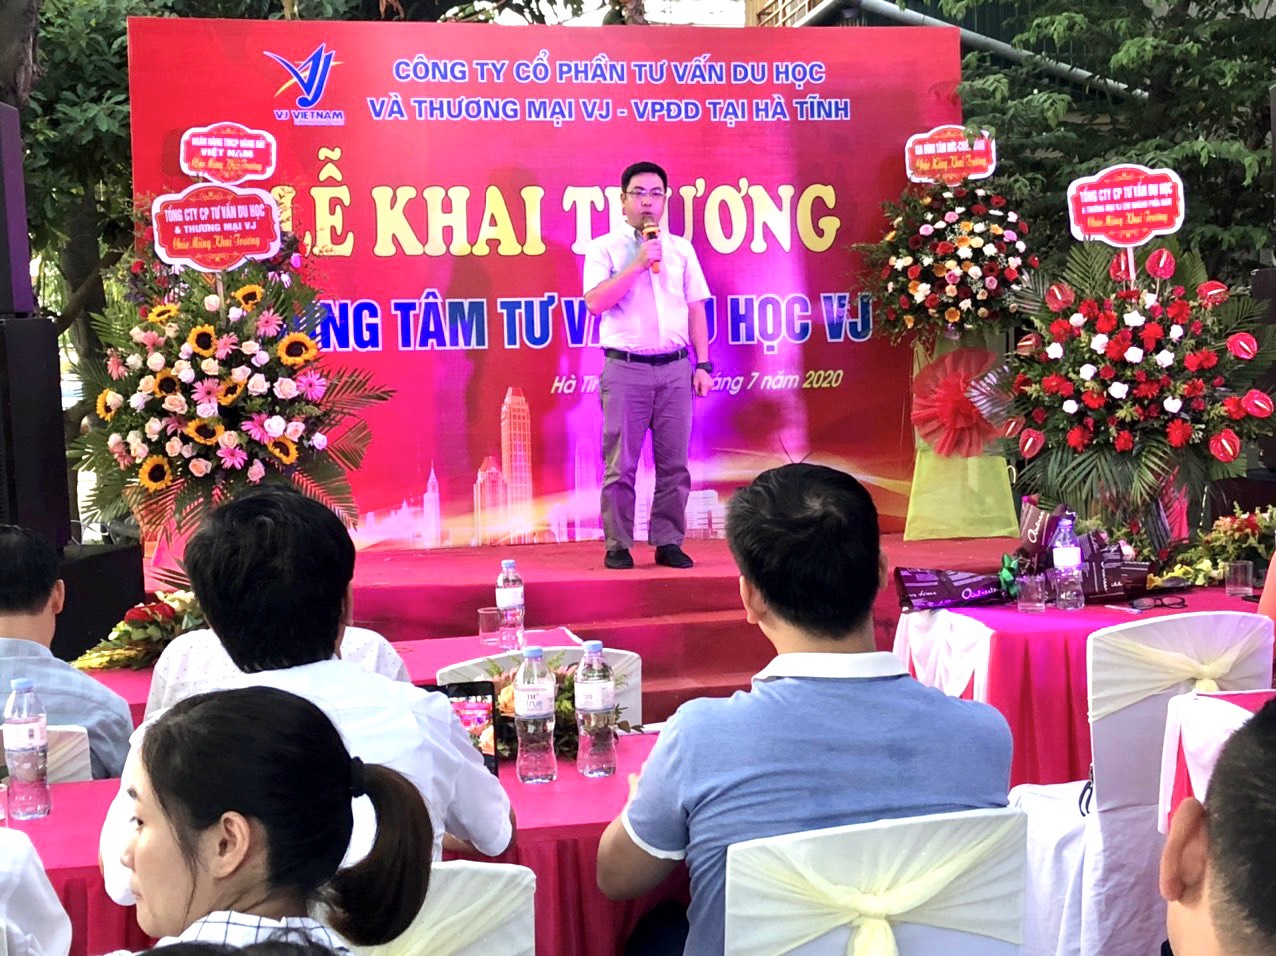 Ông Đinh Văn Hảo – Chủ Tịch Hội Đồng Quản Trị - Tổng giám đốc công ty phát biểu ý kiến về việc thành lập VPĐD